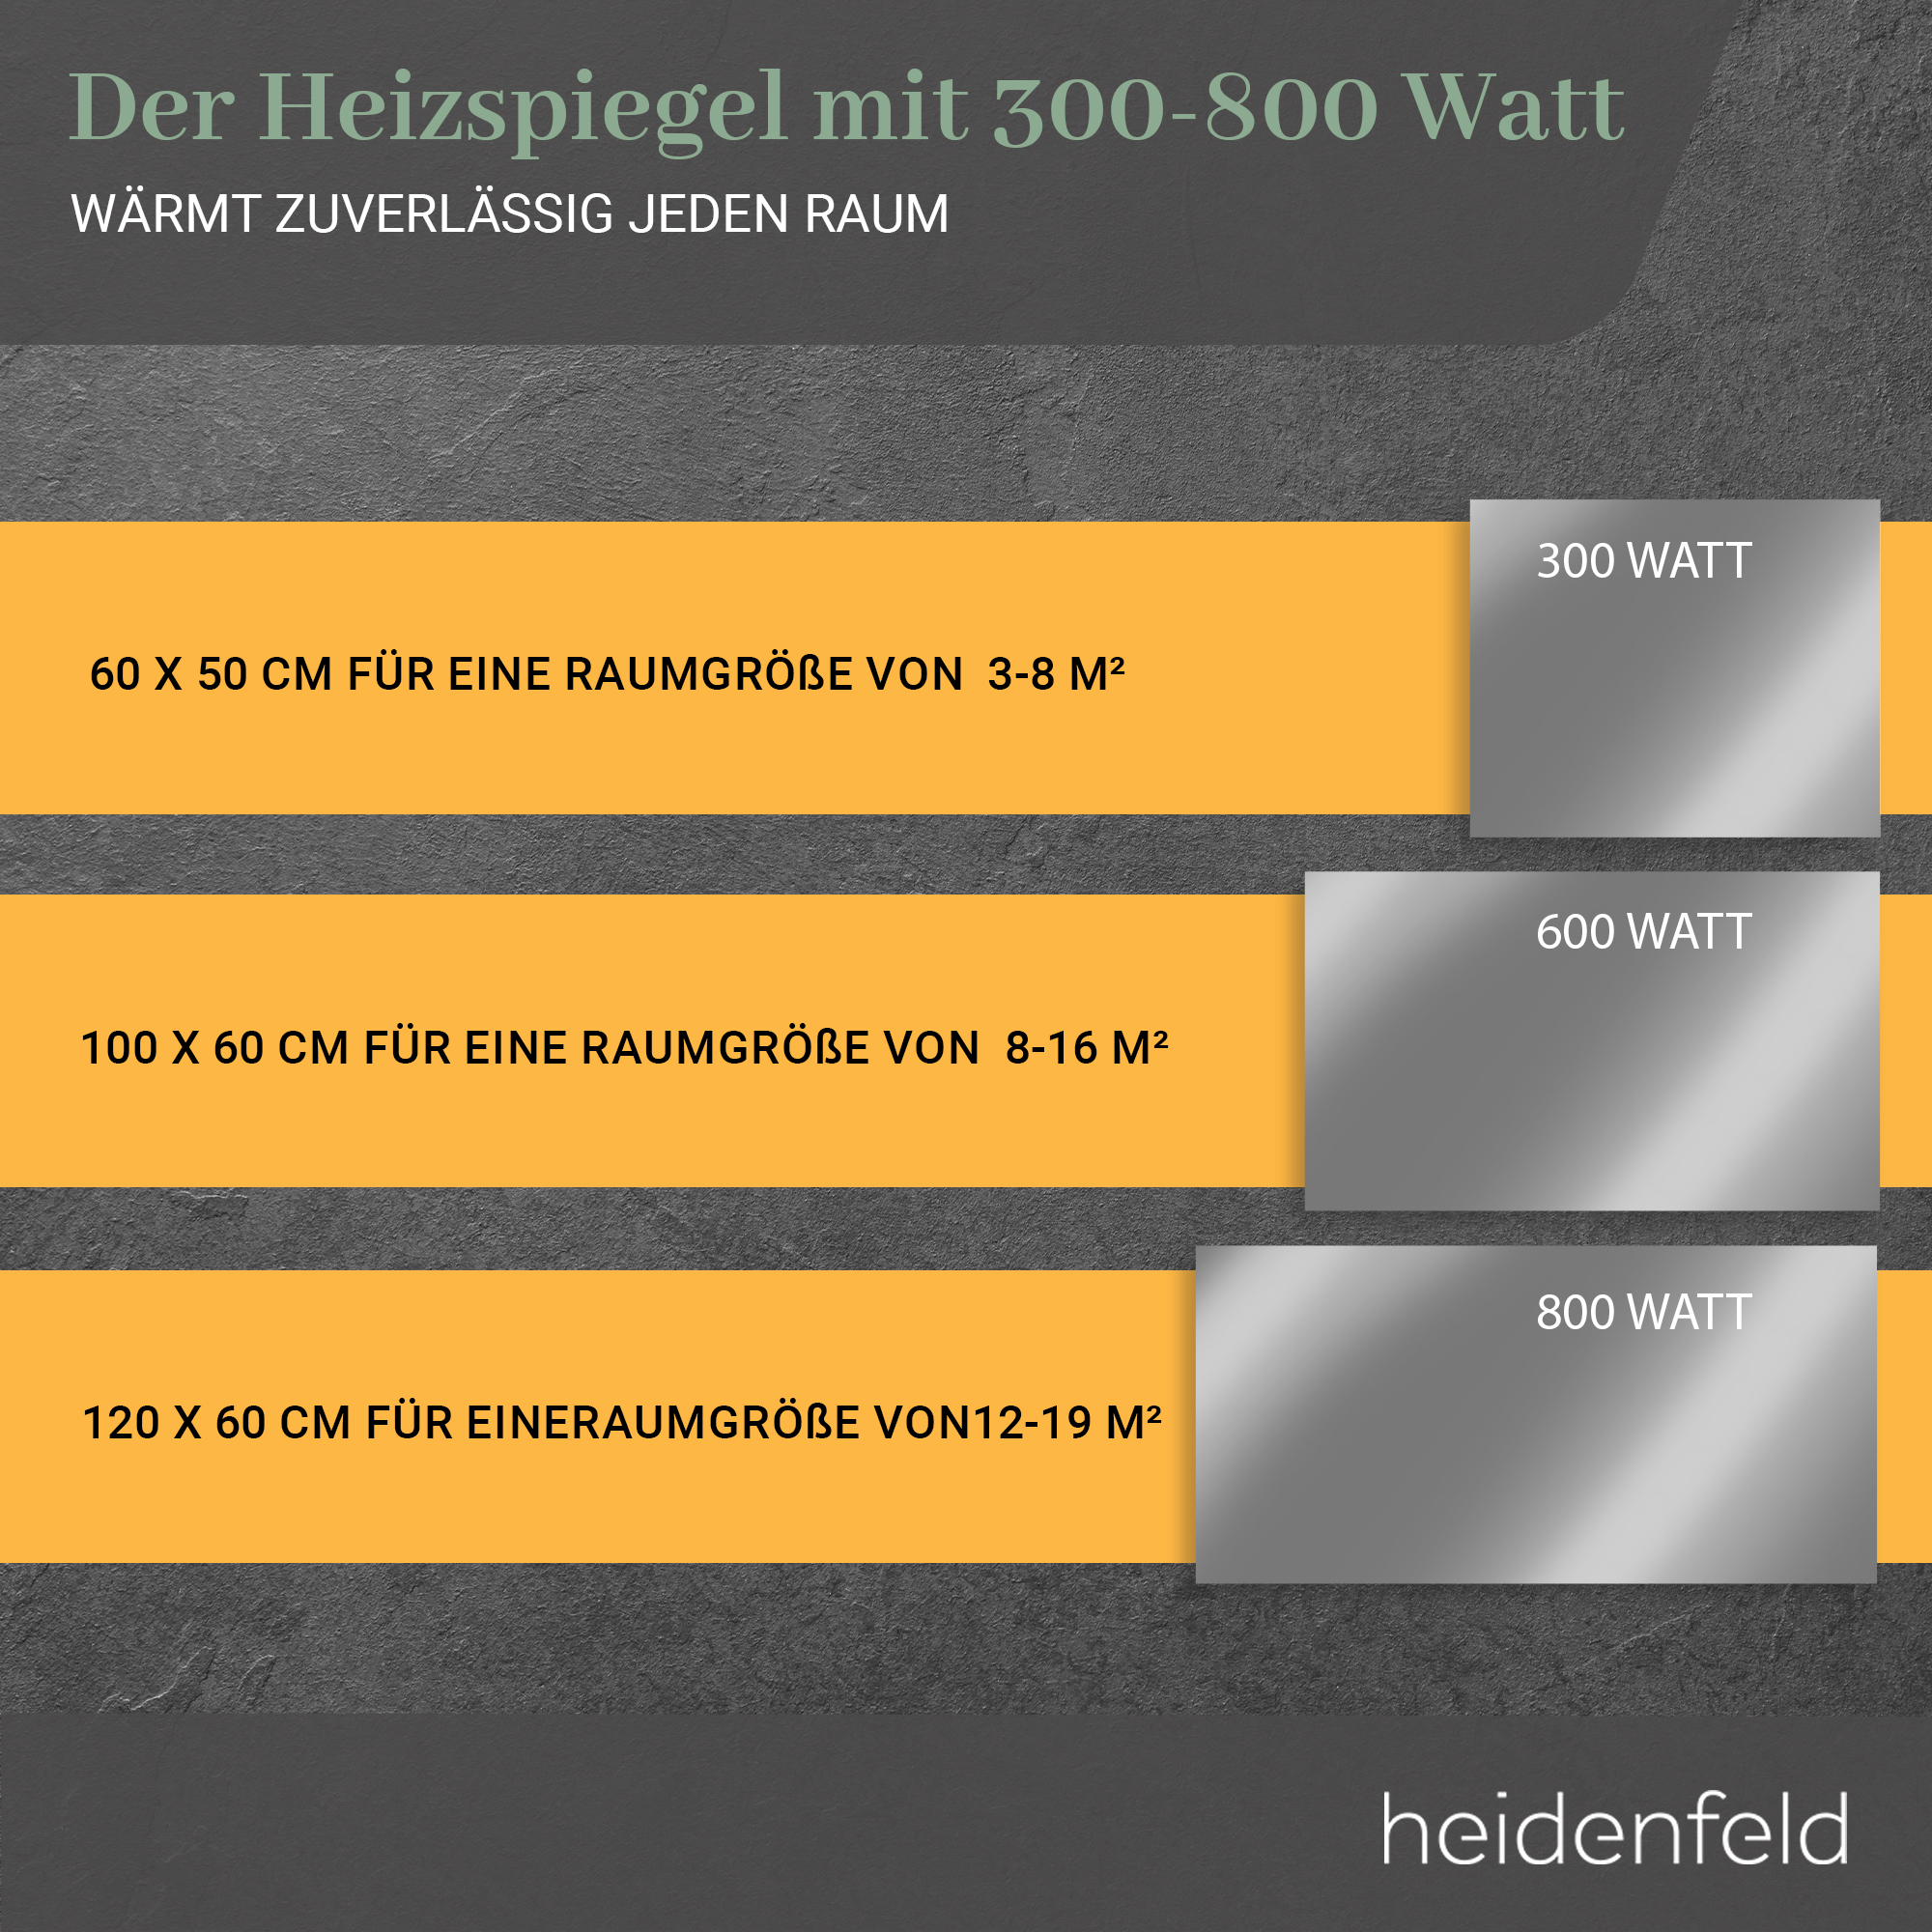 HEIDENFELD HF-HS100 Heizspiegel (600 Watt)